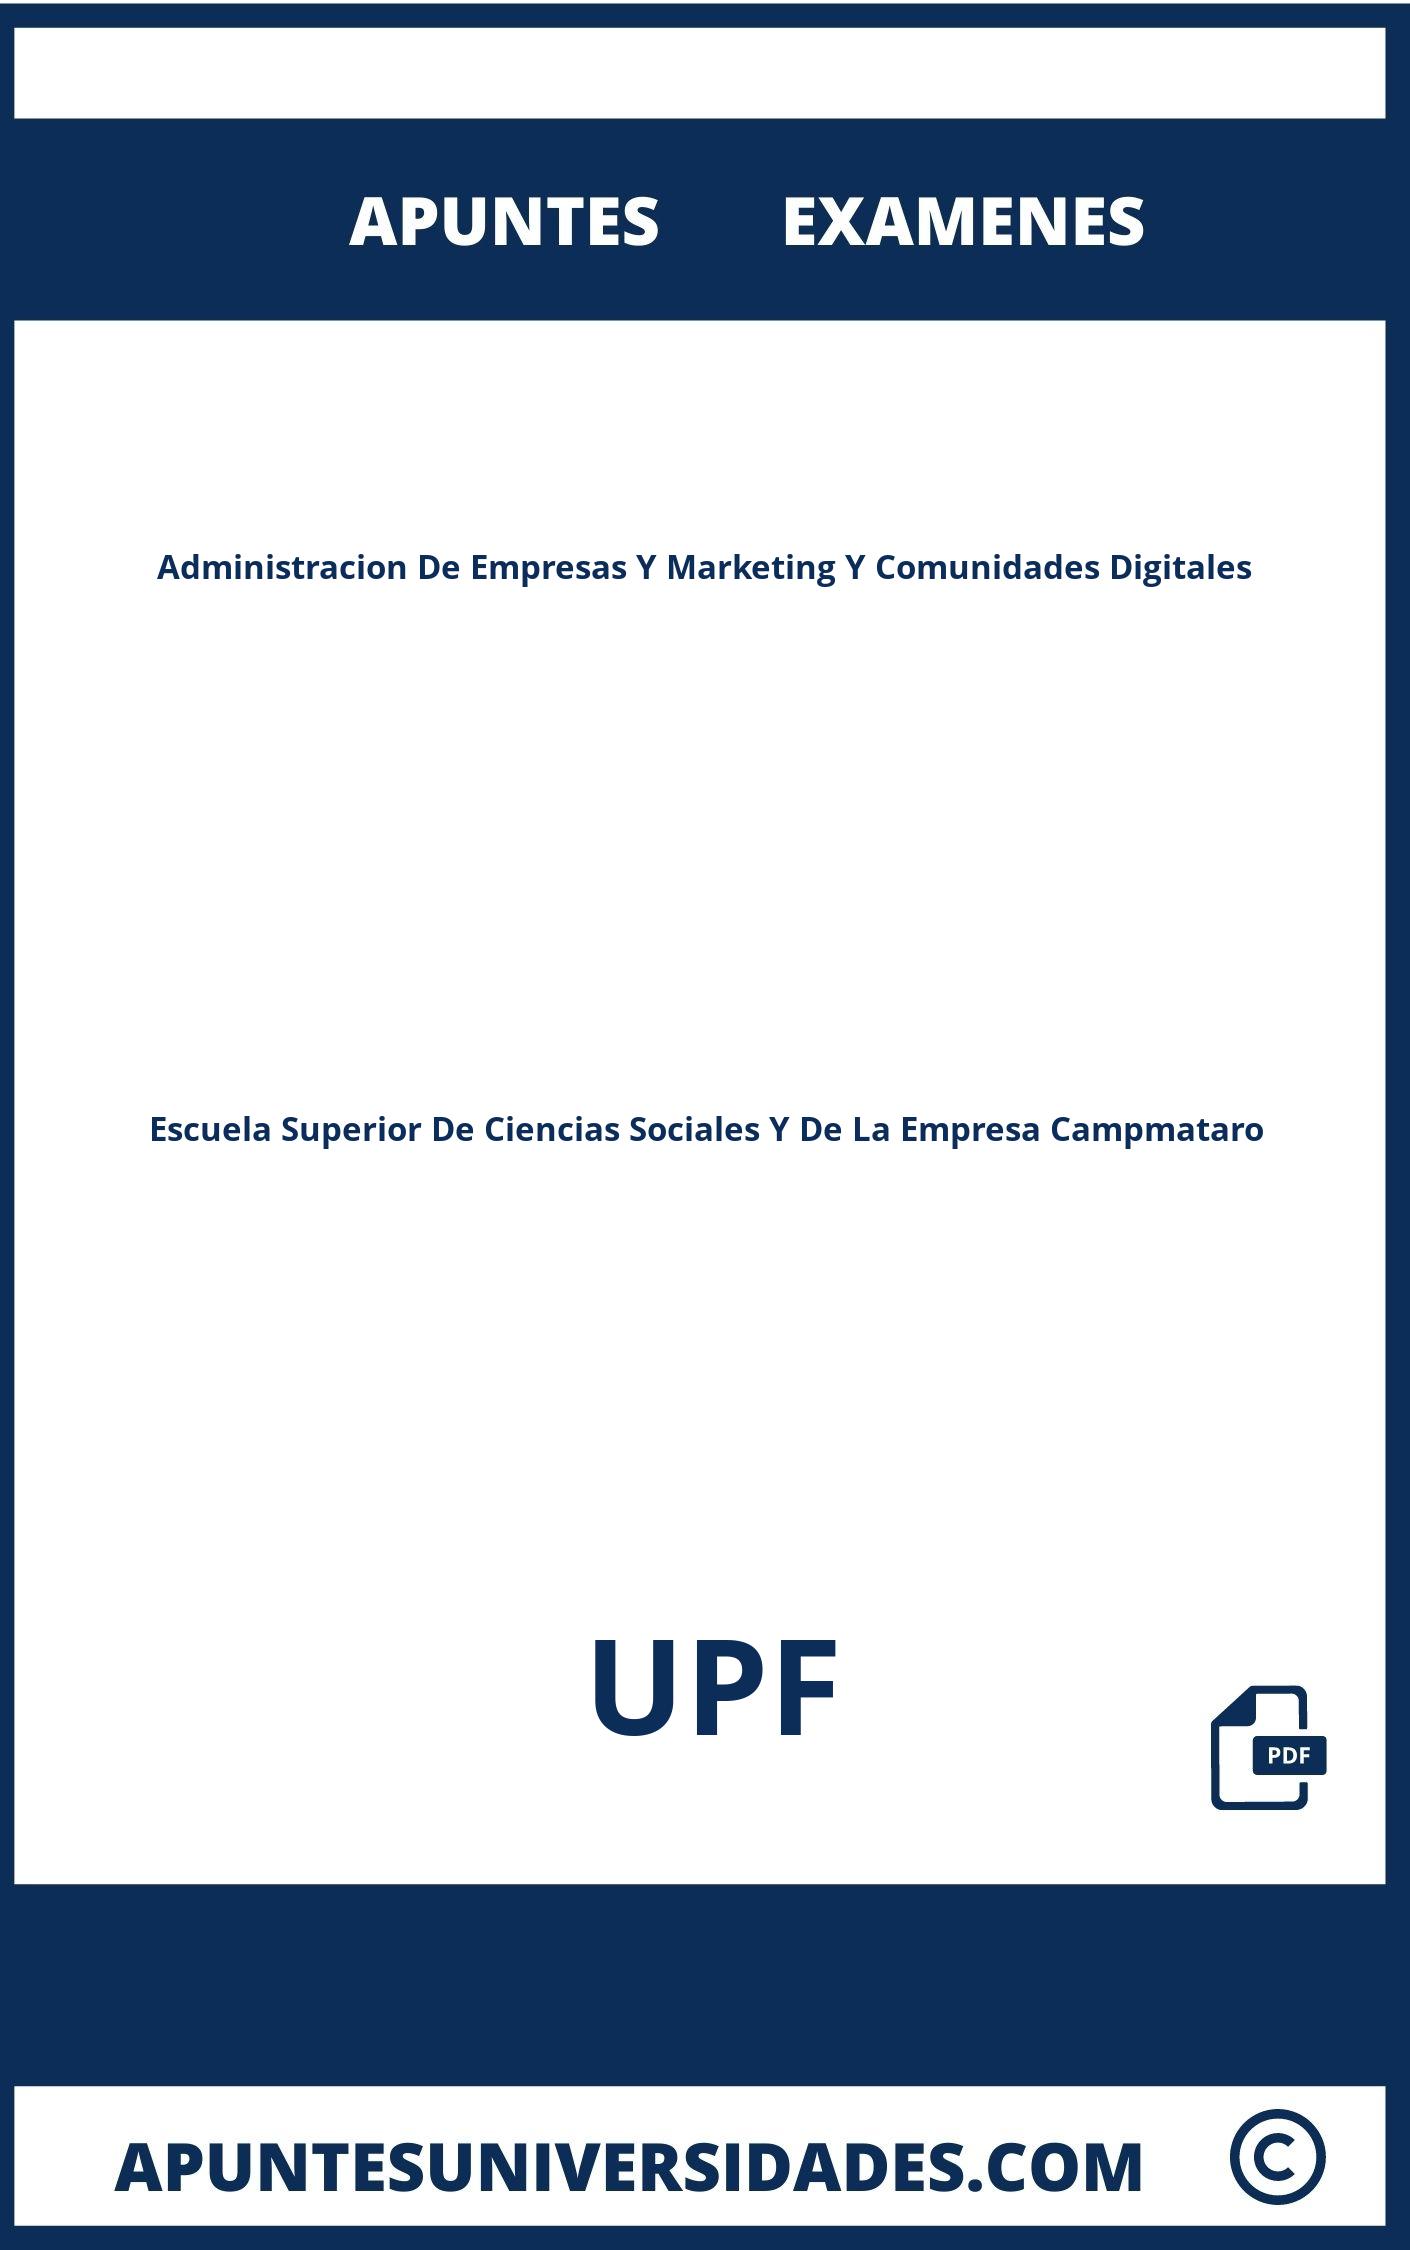 Examenes y Apuntes Administracion De Empresas Y Marketing Y Comunidades Digitales UPF